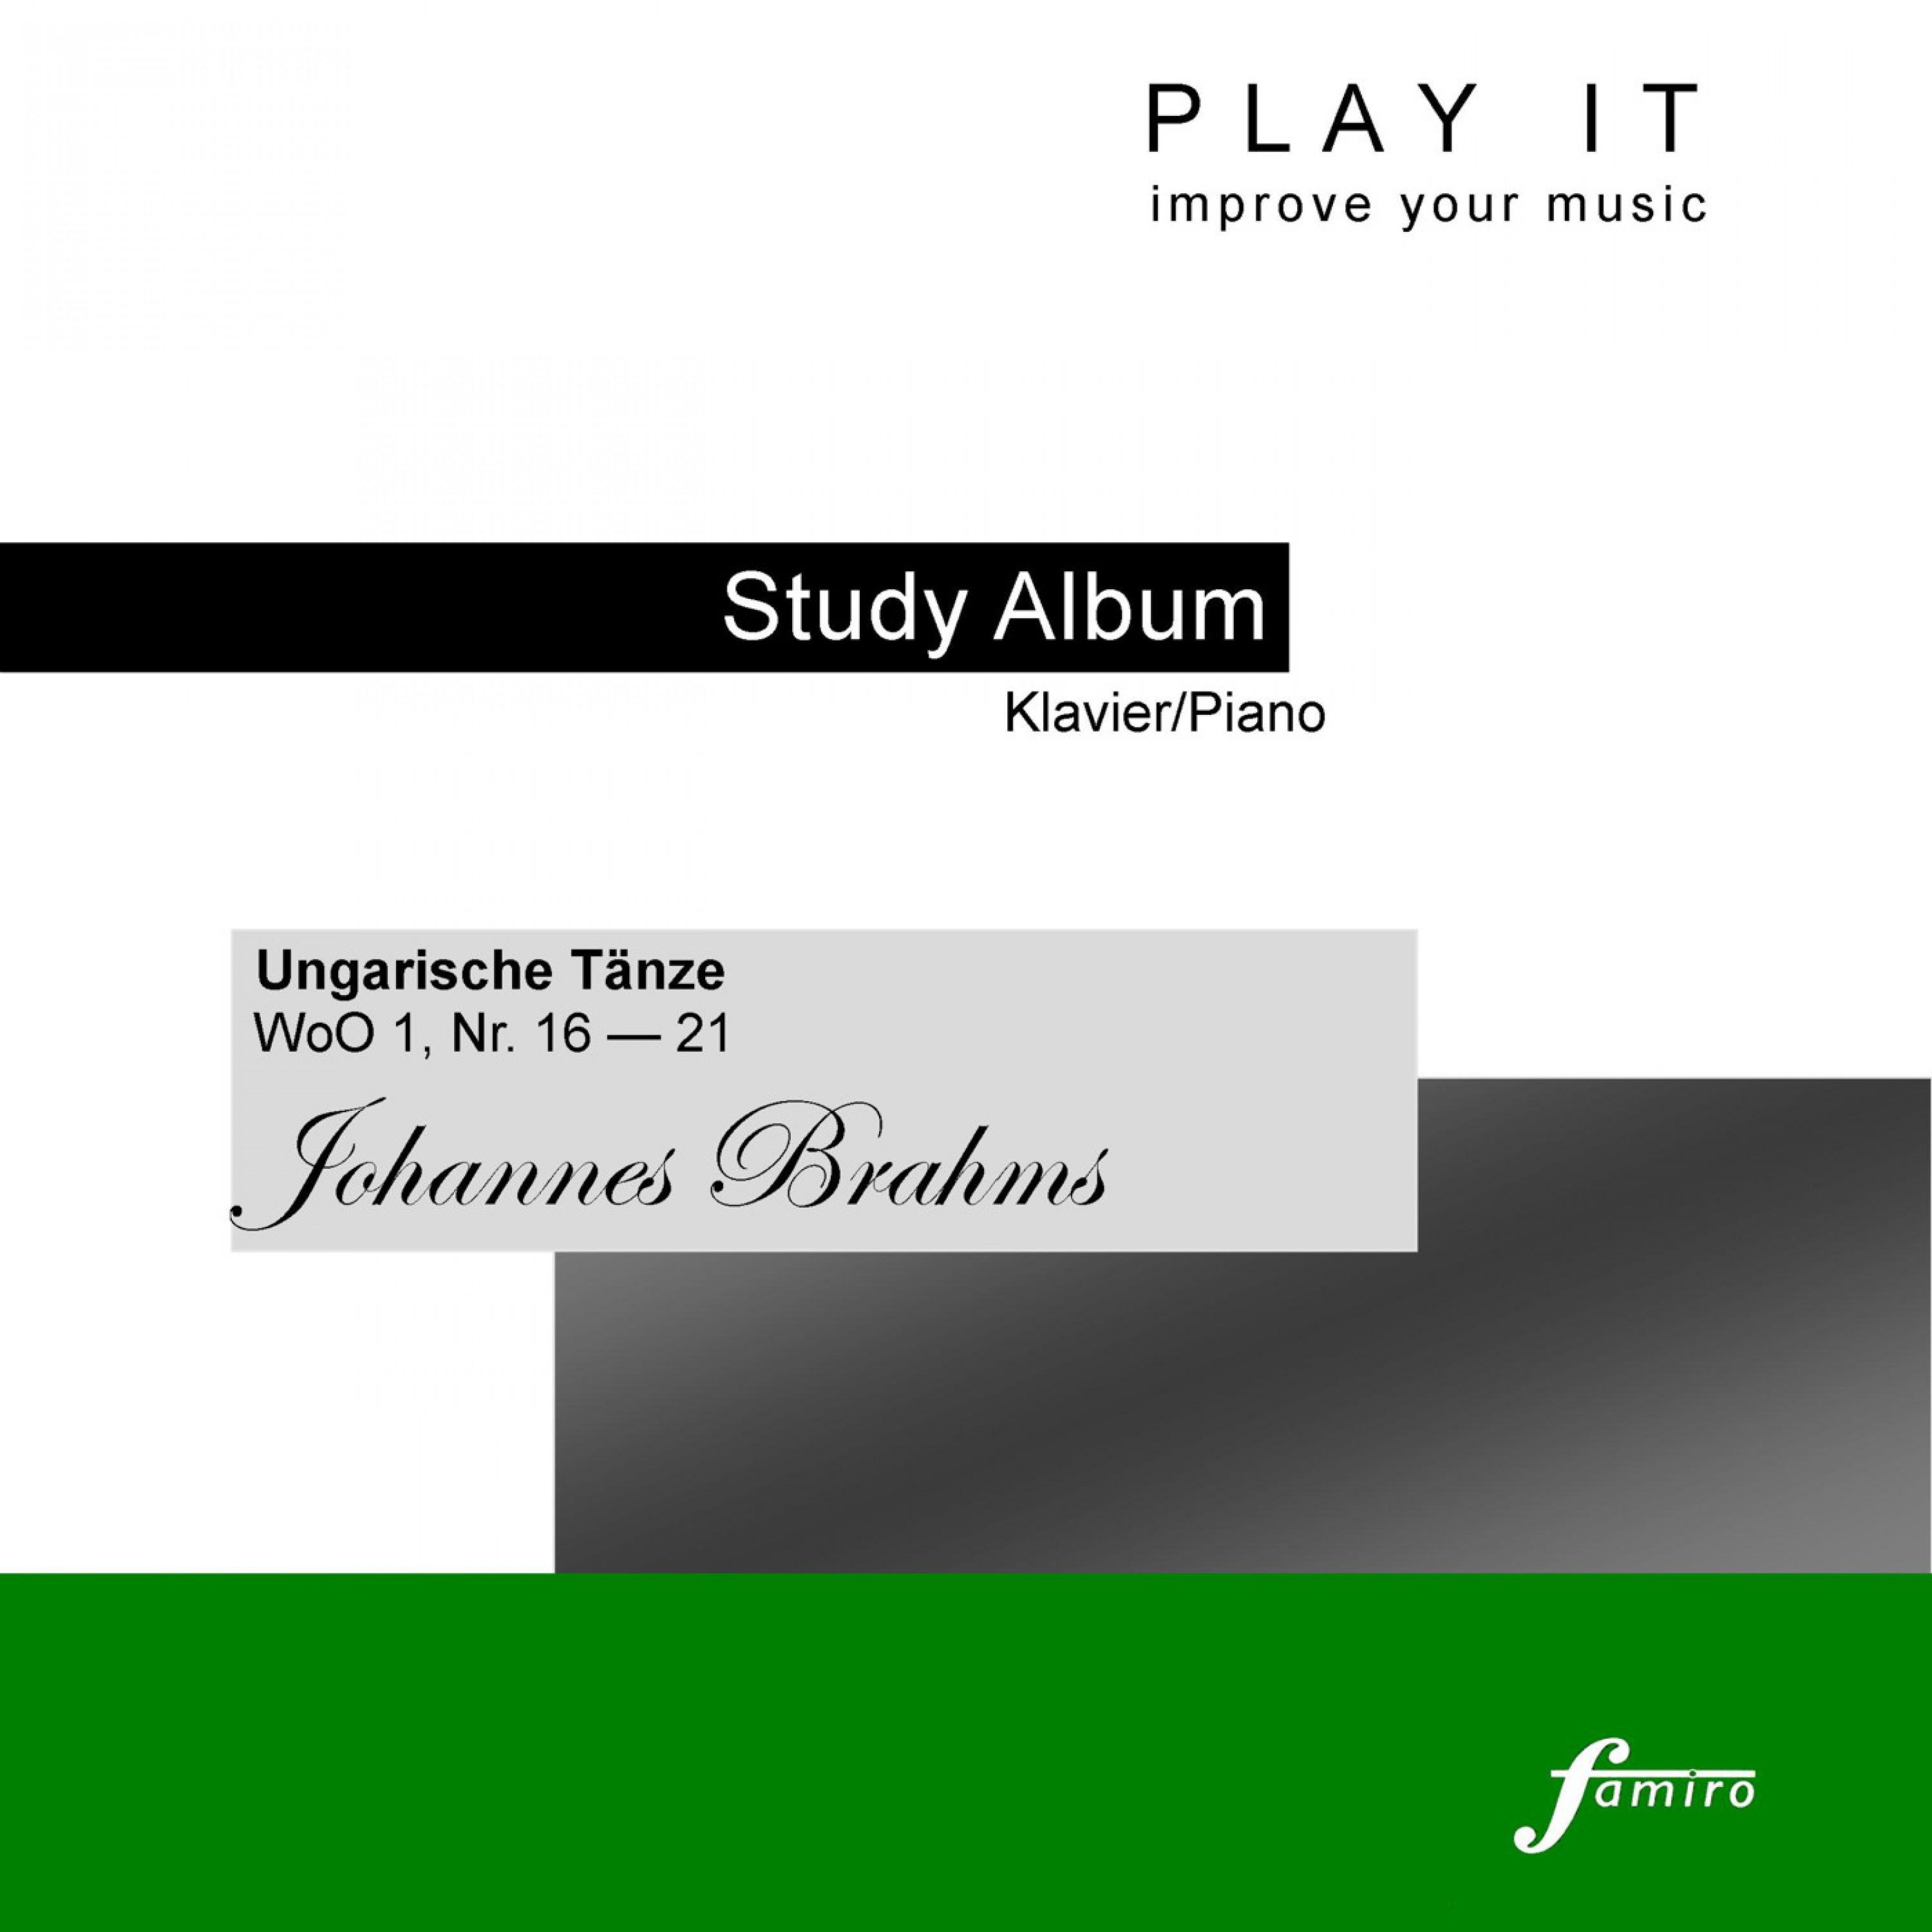 Play It - Study Album - Klavier/Piano; Johannes Brahms: "Ungarische Tänze", WoO 1, No. 16-21